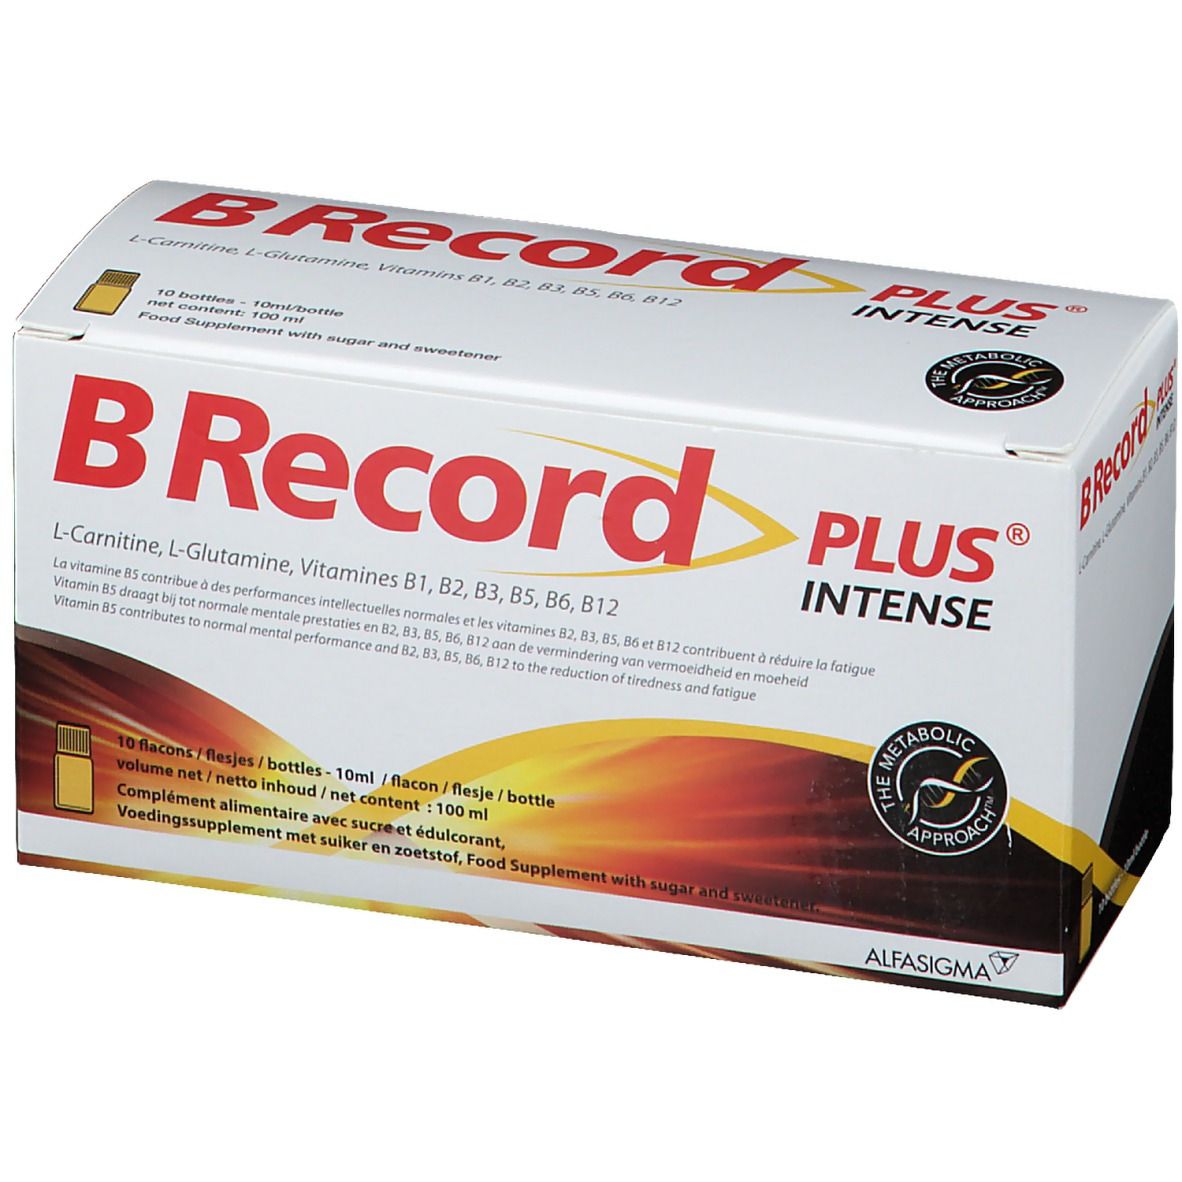 BRecord Plus ® Intense